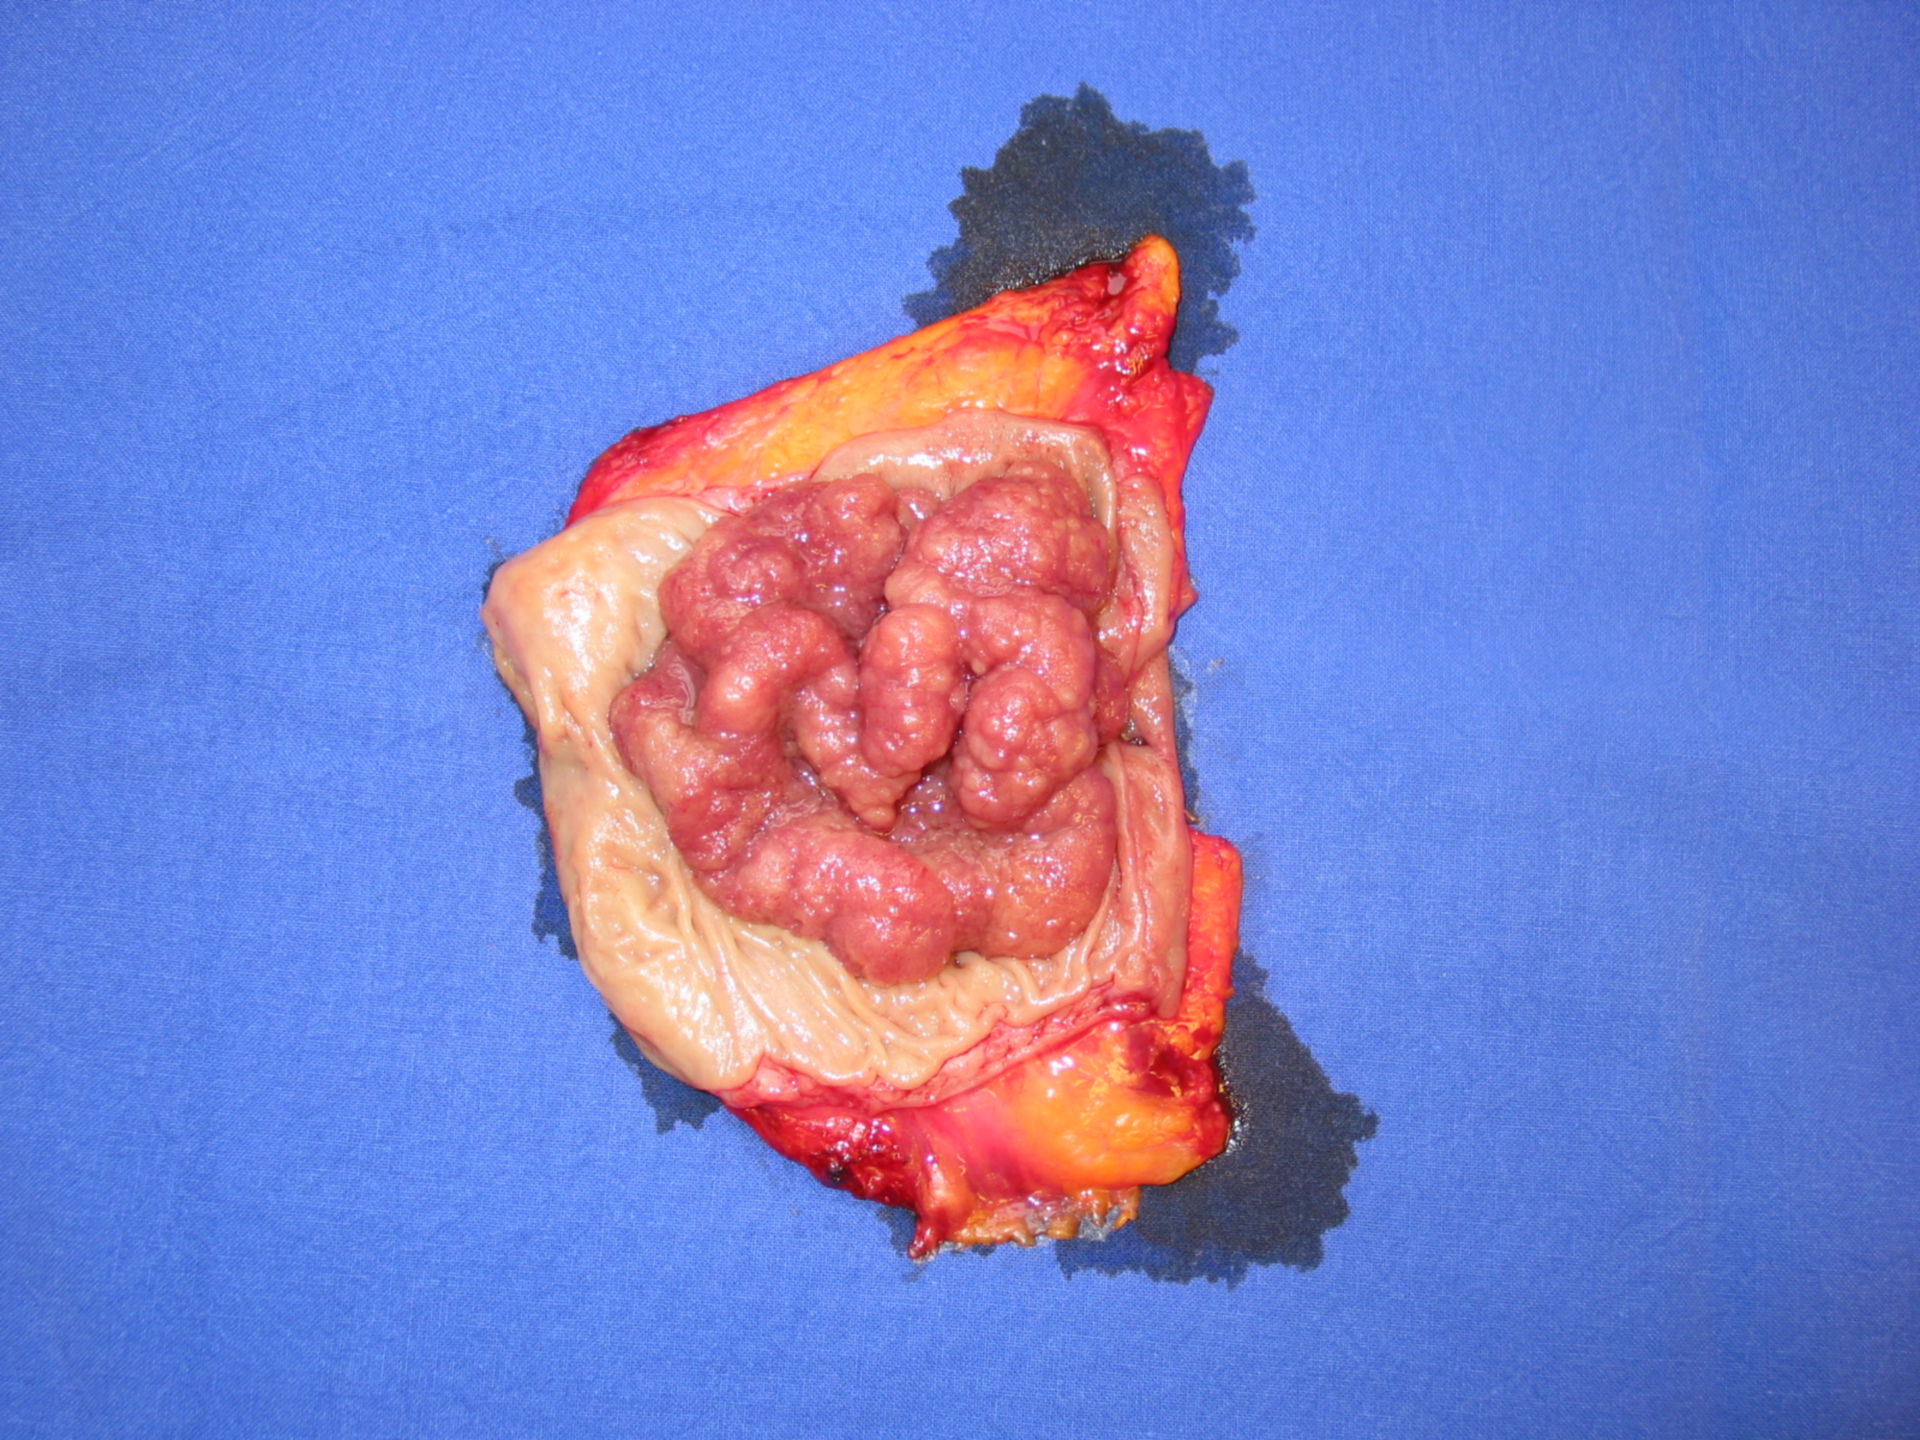 Large adenoma of the rectum